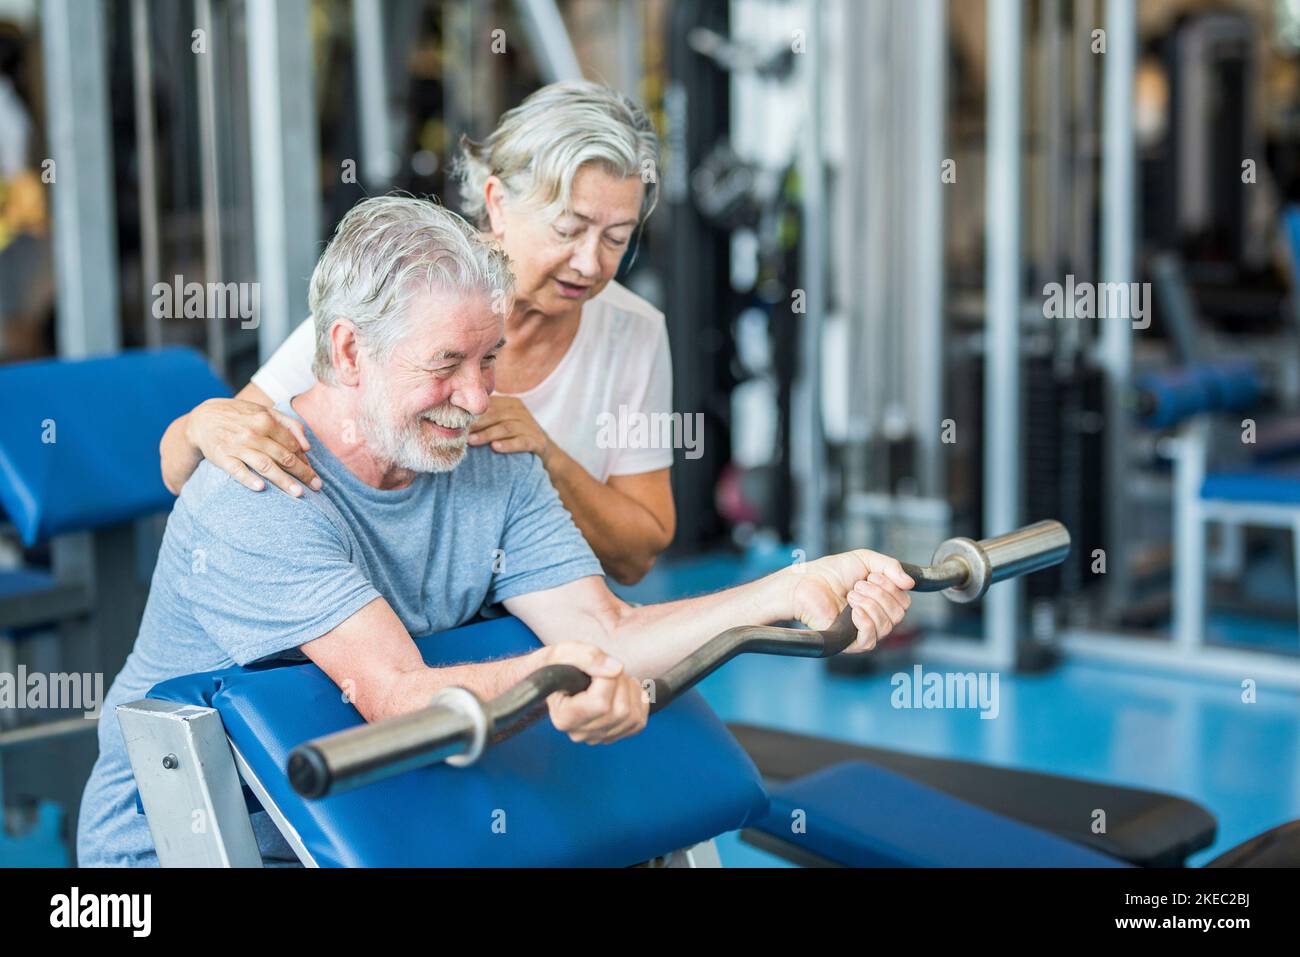 Ein paar von zwei Senioren im Fitnessstudio machen zusammen Sport Spaß haben, gesund und fit zu sein - Mann hält Ein barr ohne Gewicht und mit seiner Frau, die ihm hilft Stockfoto